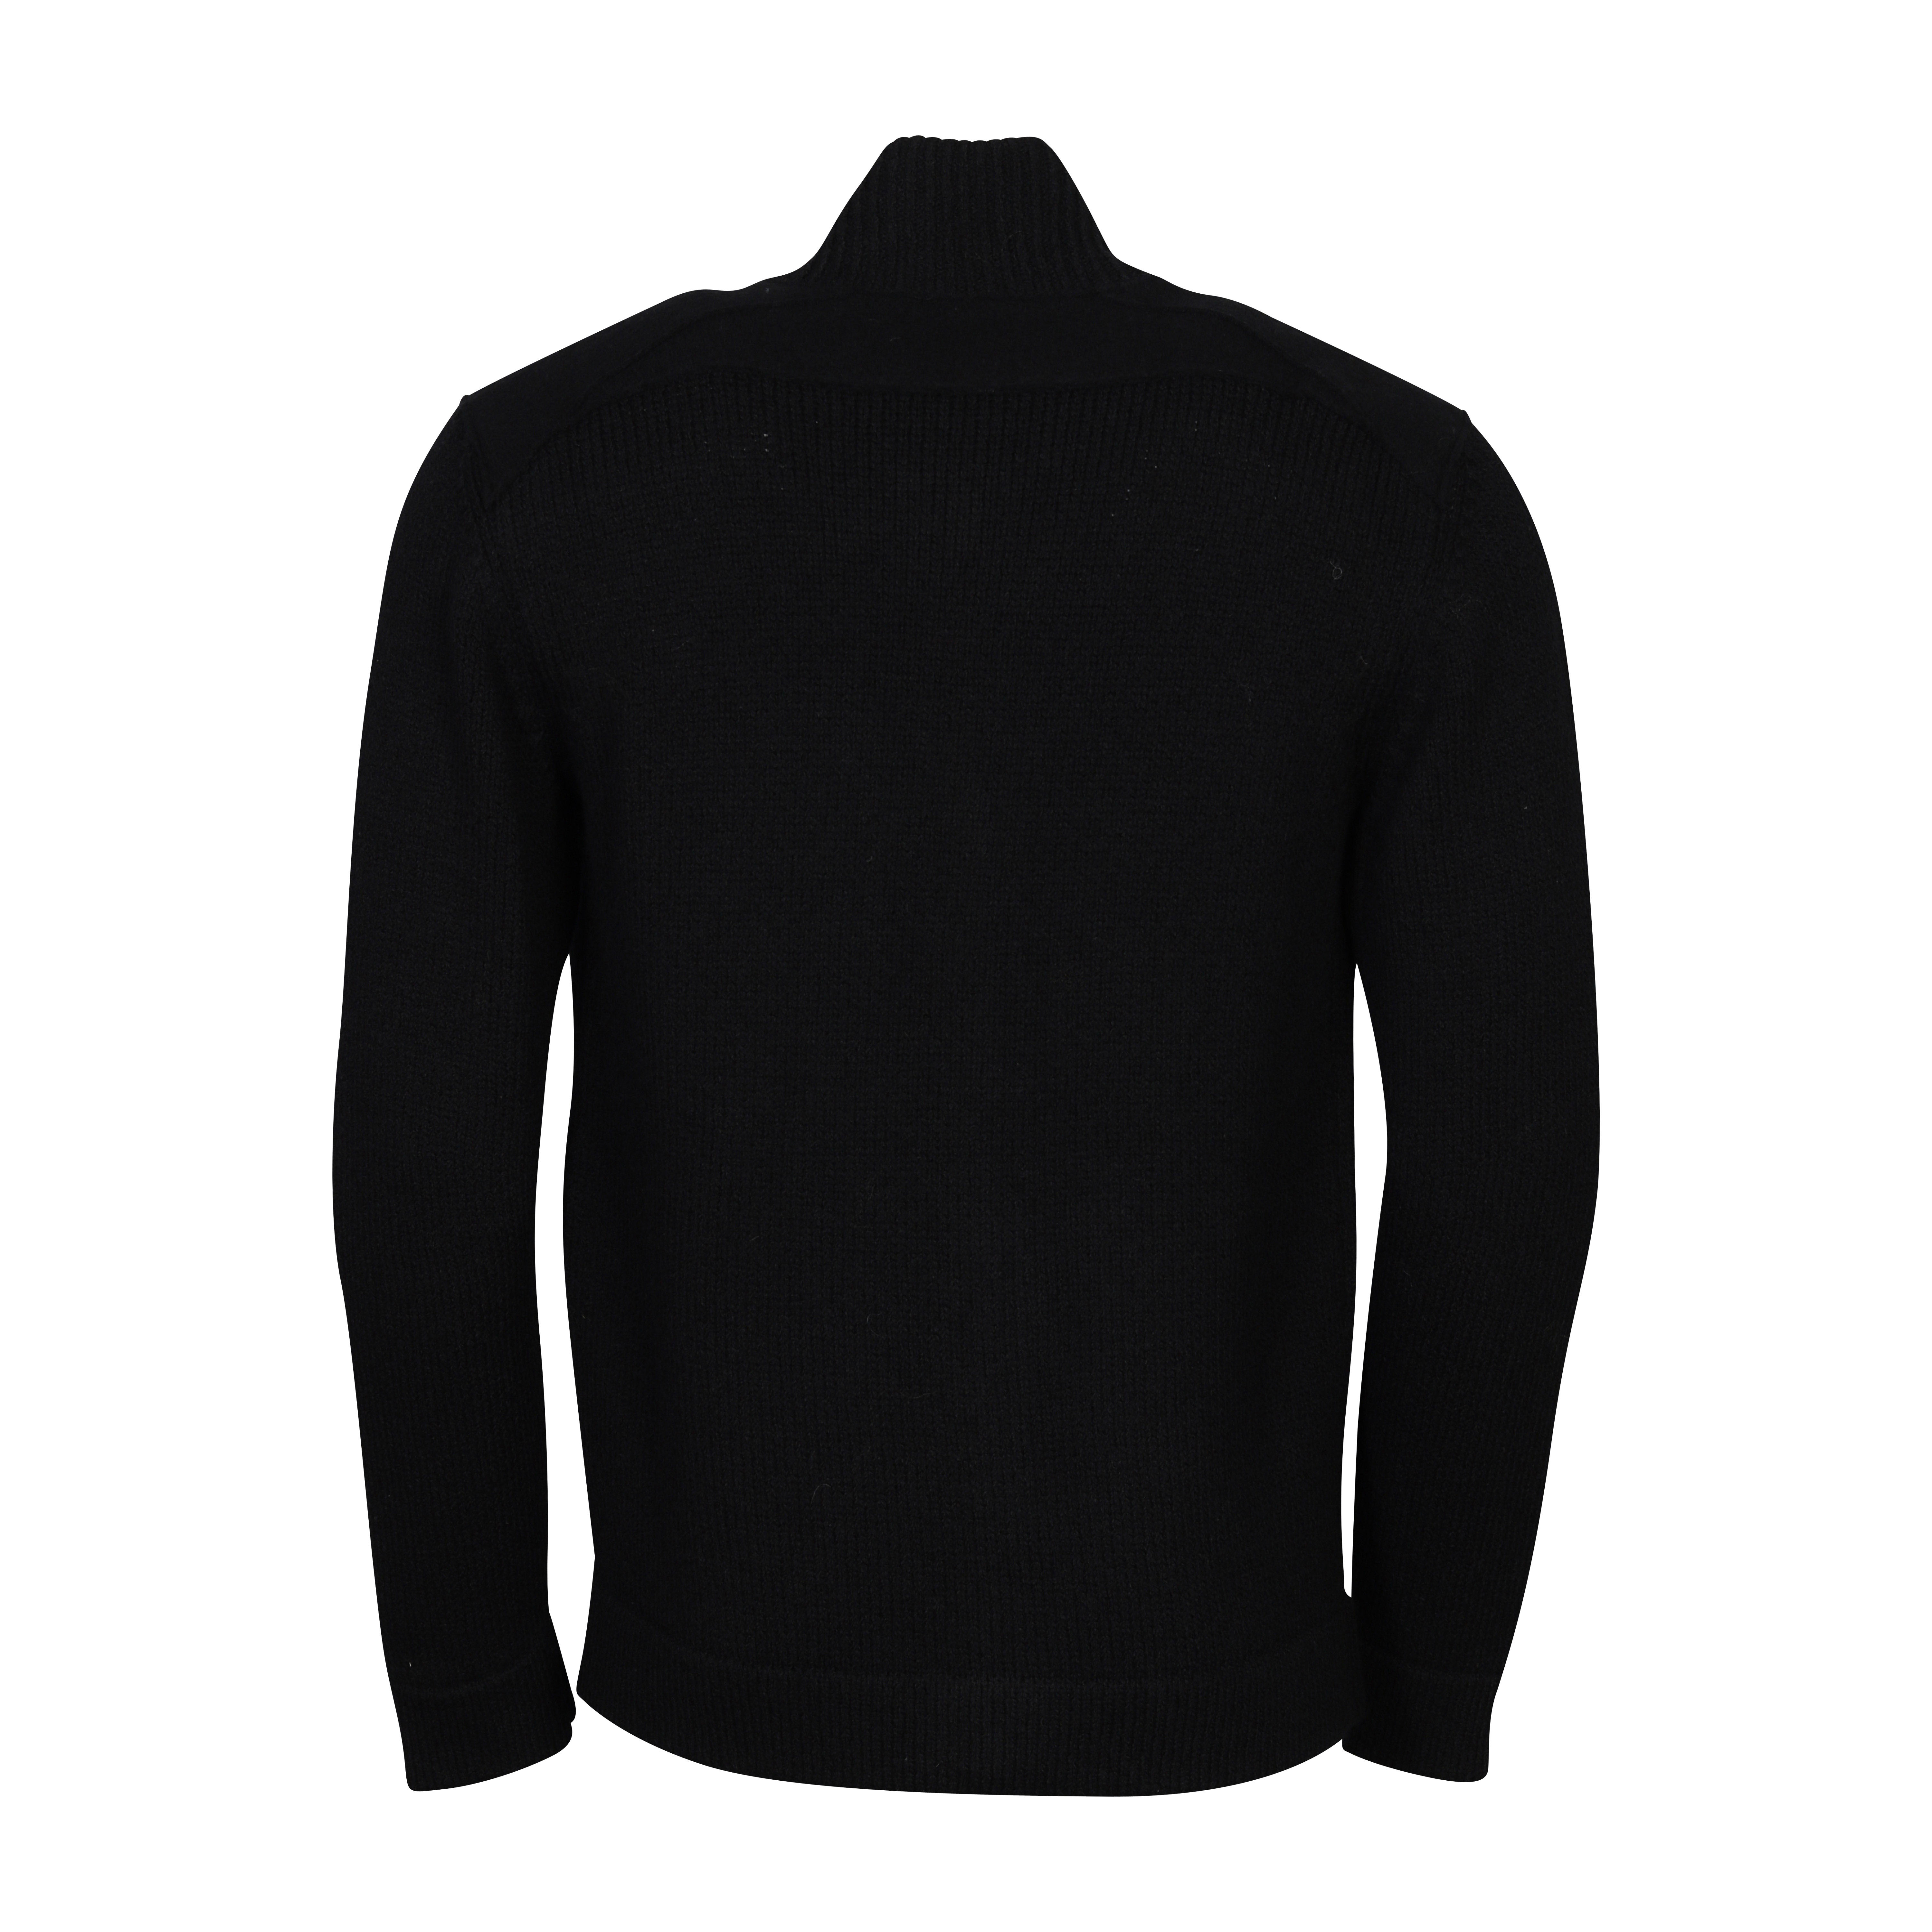 Transit Uomo Zip Knit Cardigan in Black